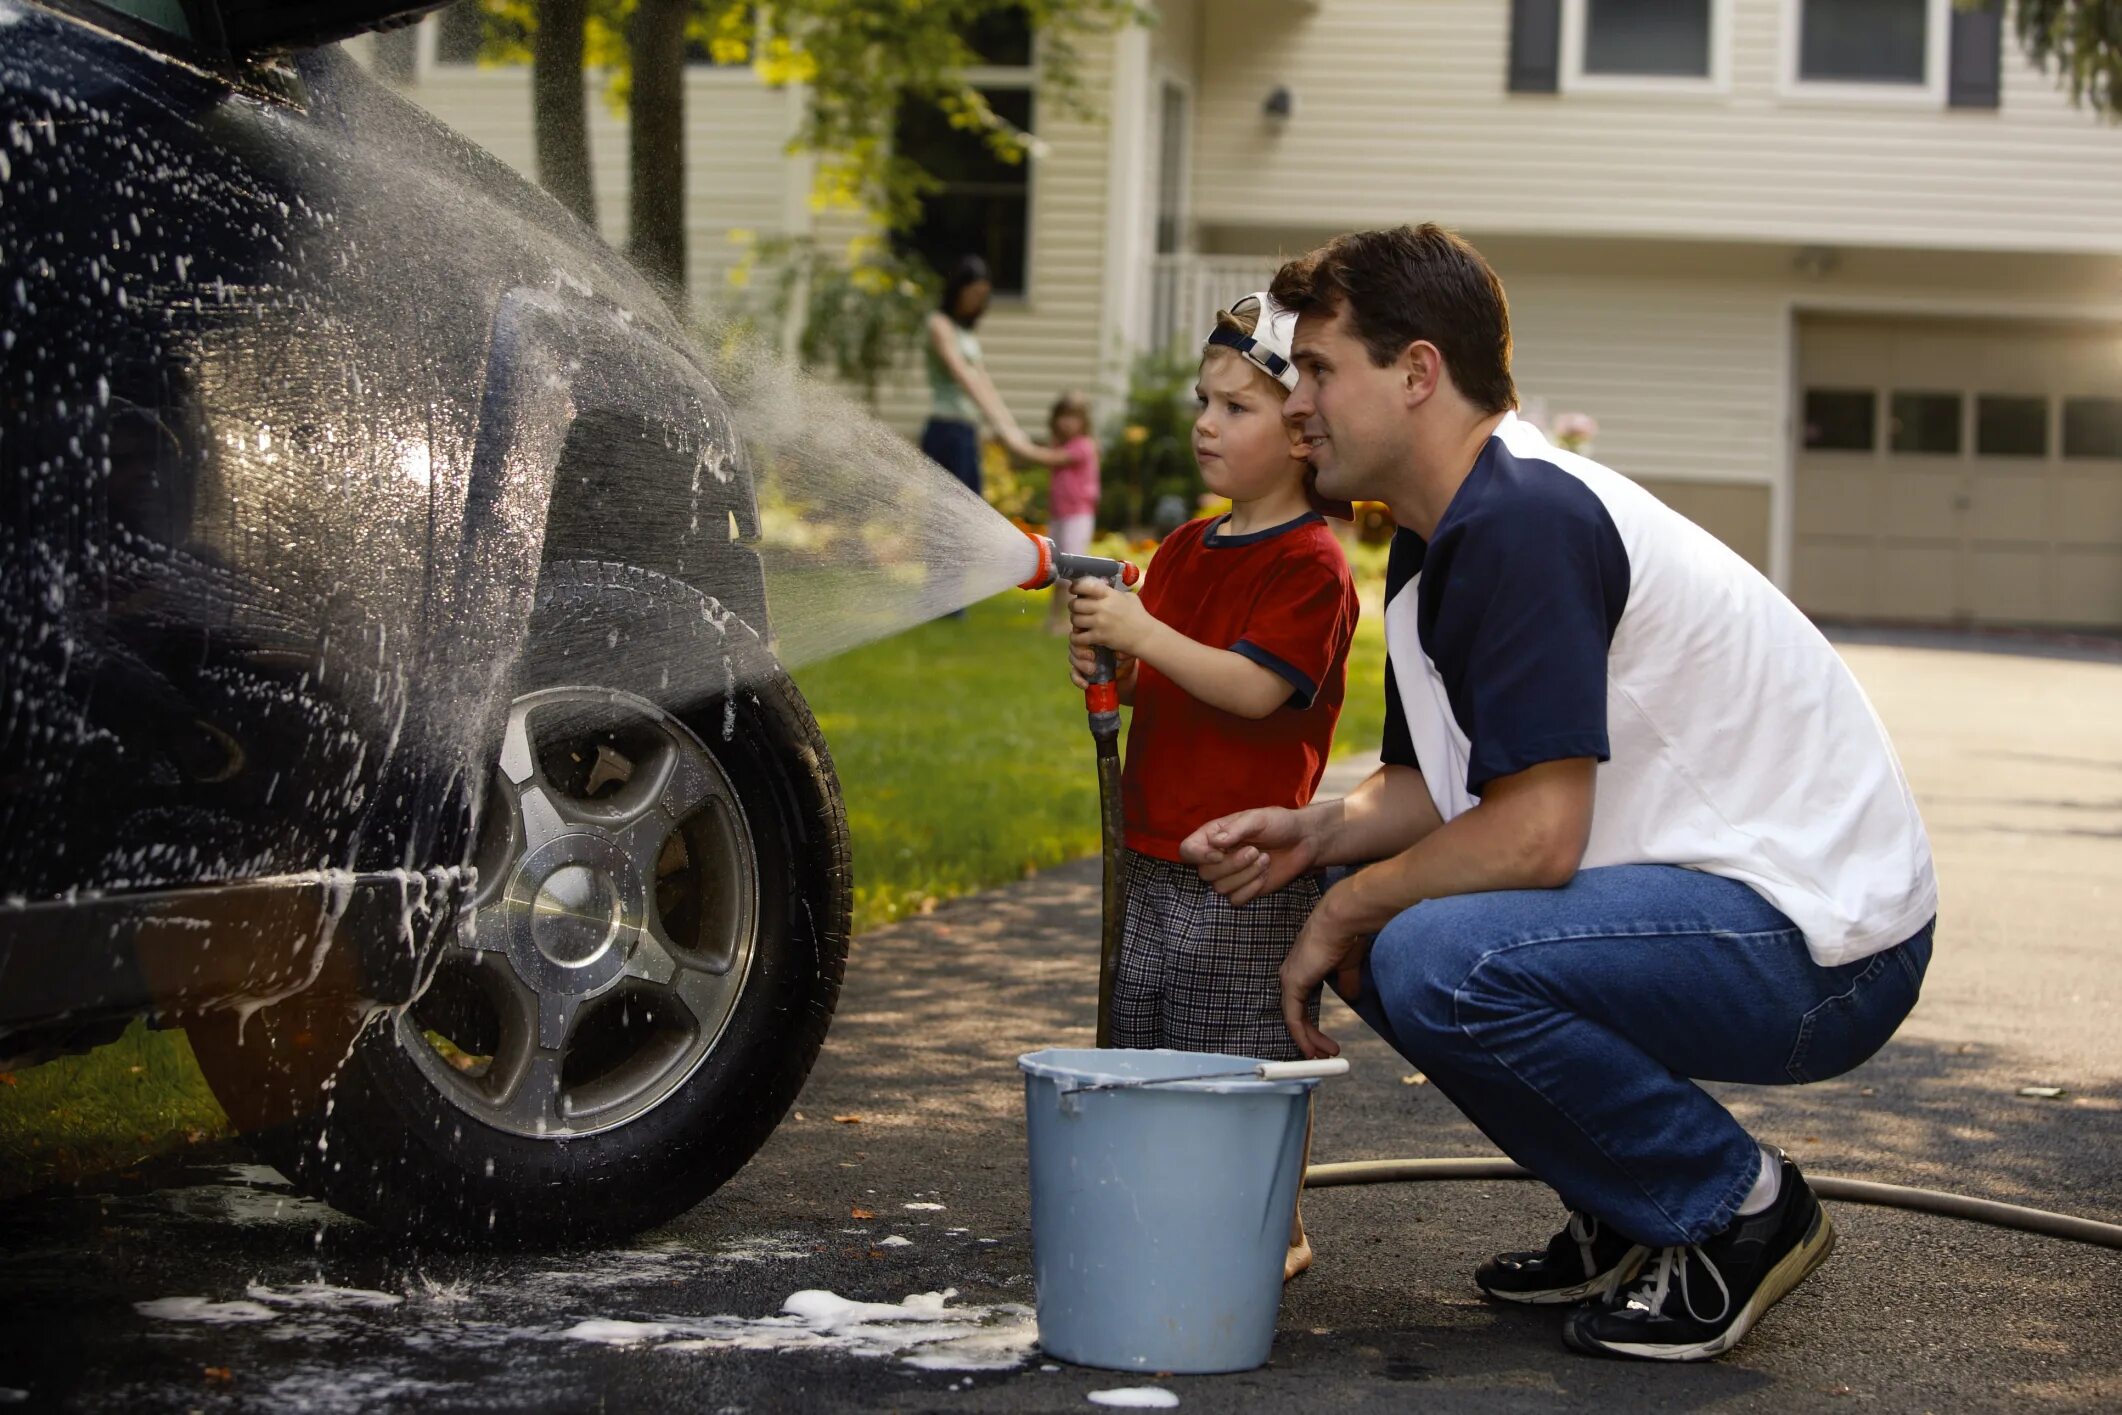 Моет машину. Ребенок чинит машину. Дети моют машину. Мальчик моет машину с папой. Папа про машину